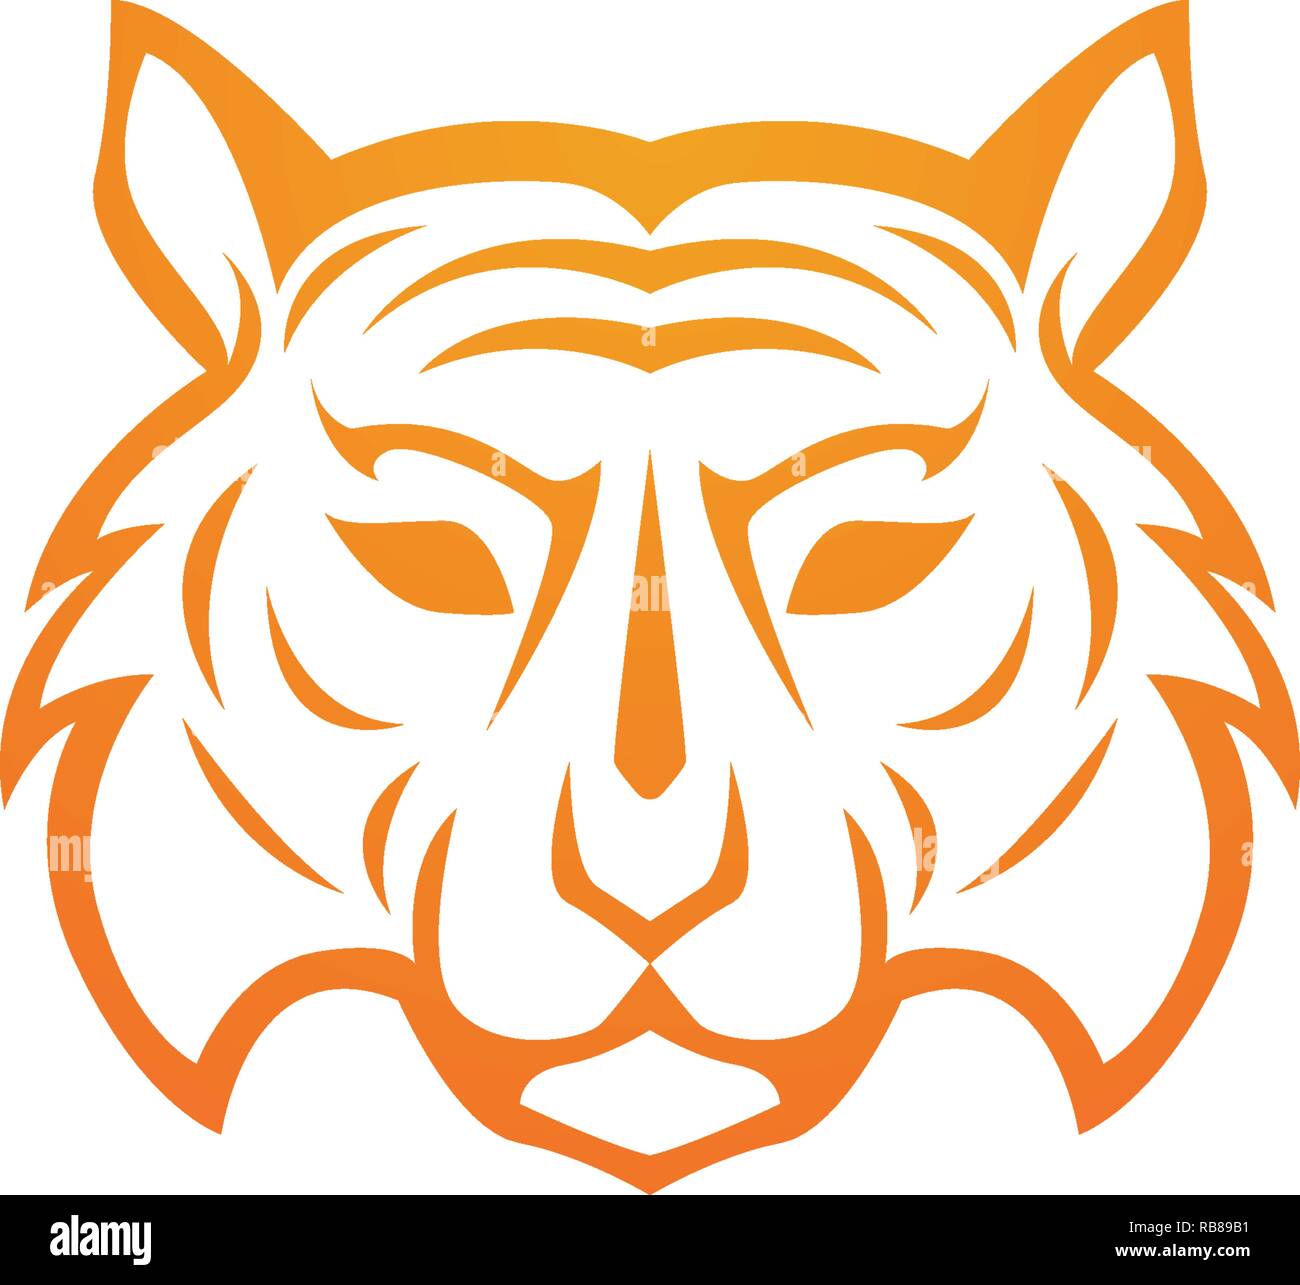 Tiger logo template vector icon design Stock Vector Image & Art - Alamy